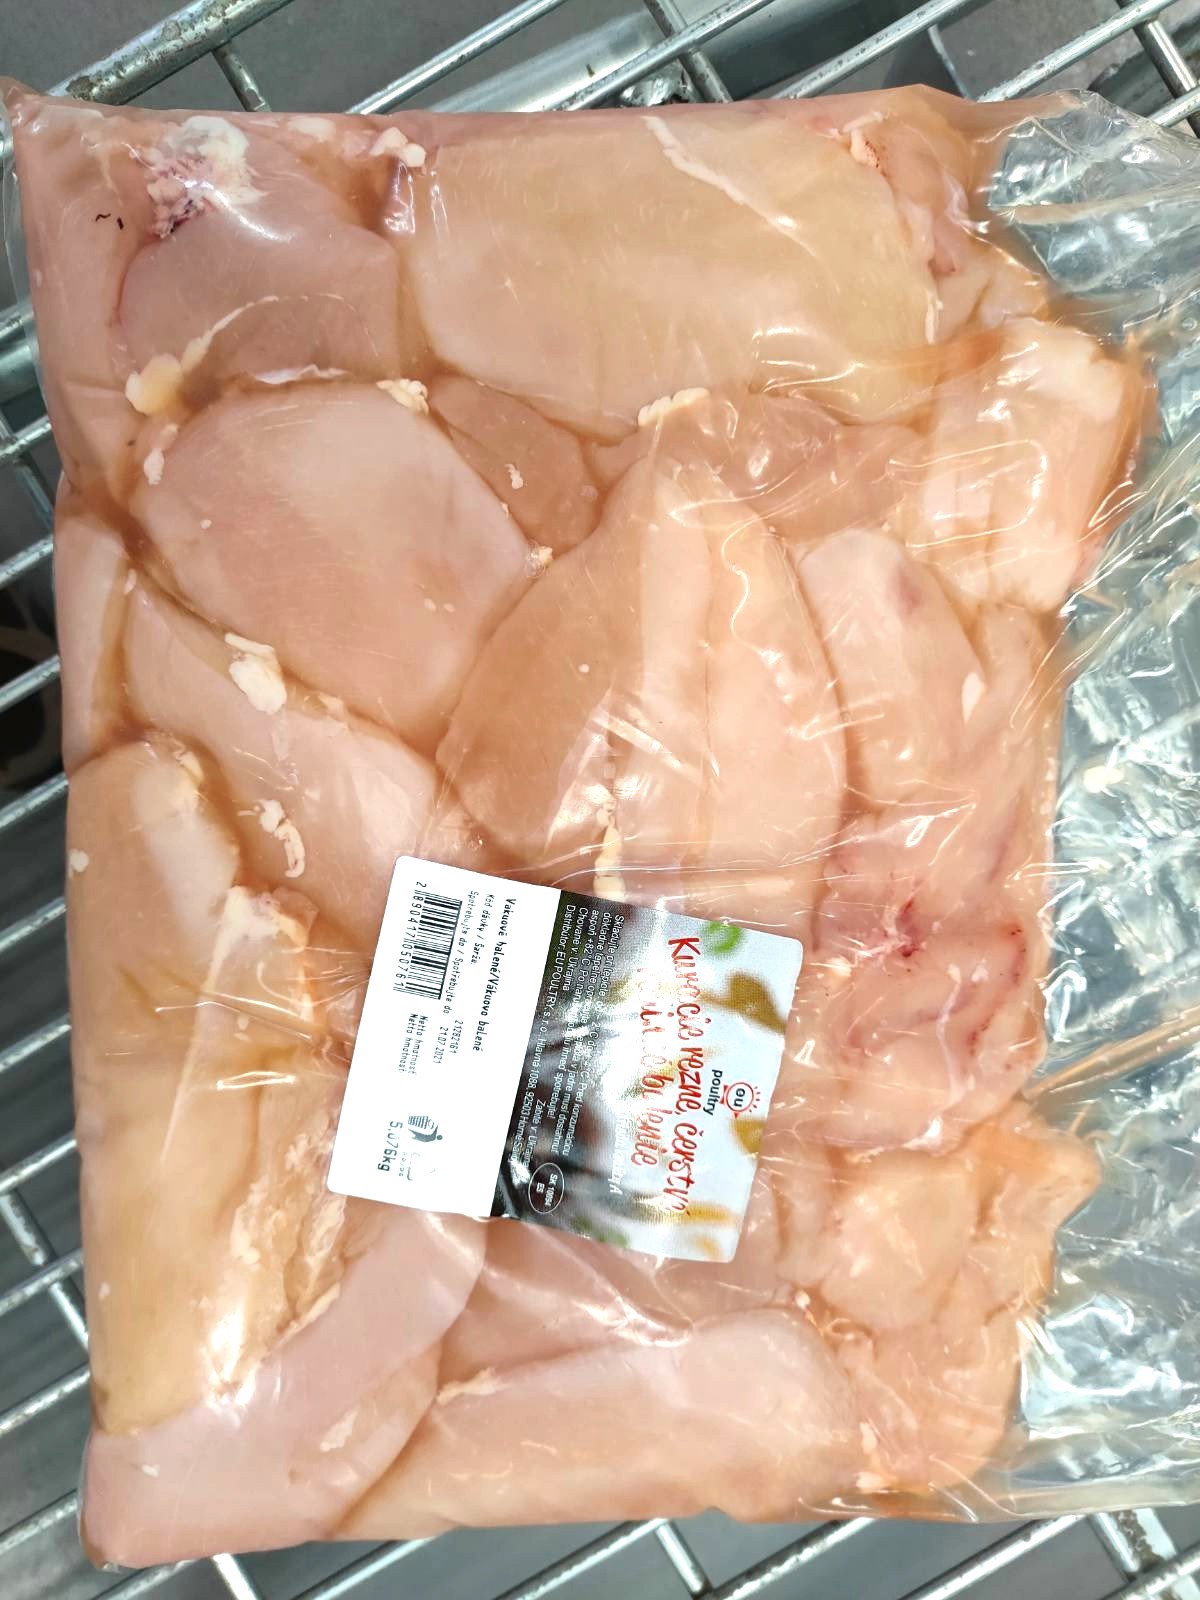 chladené kuracie mäso EU Poultry s.r.o, halal